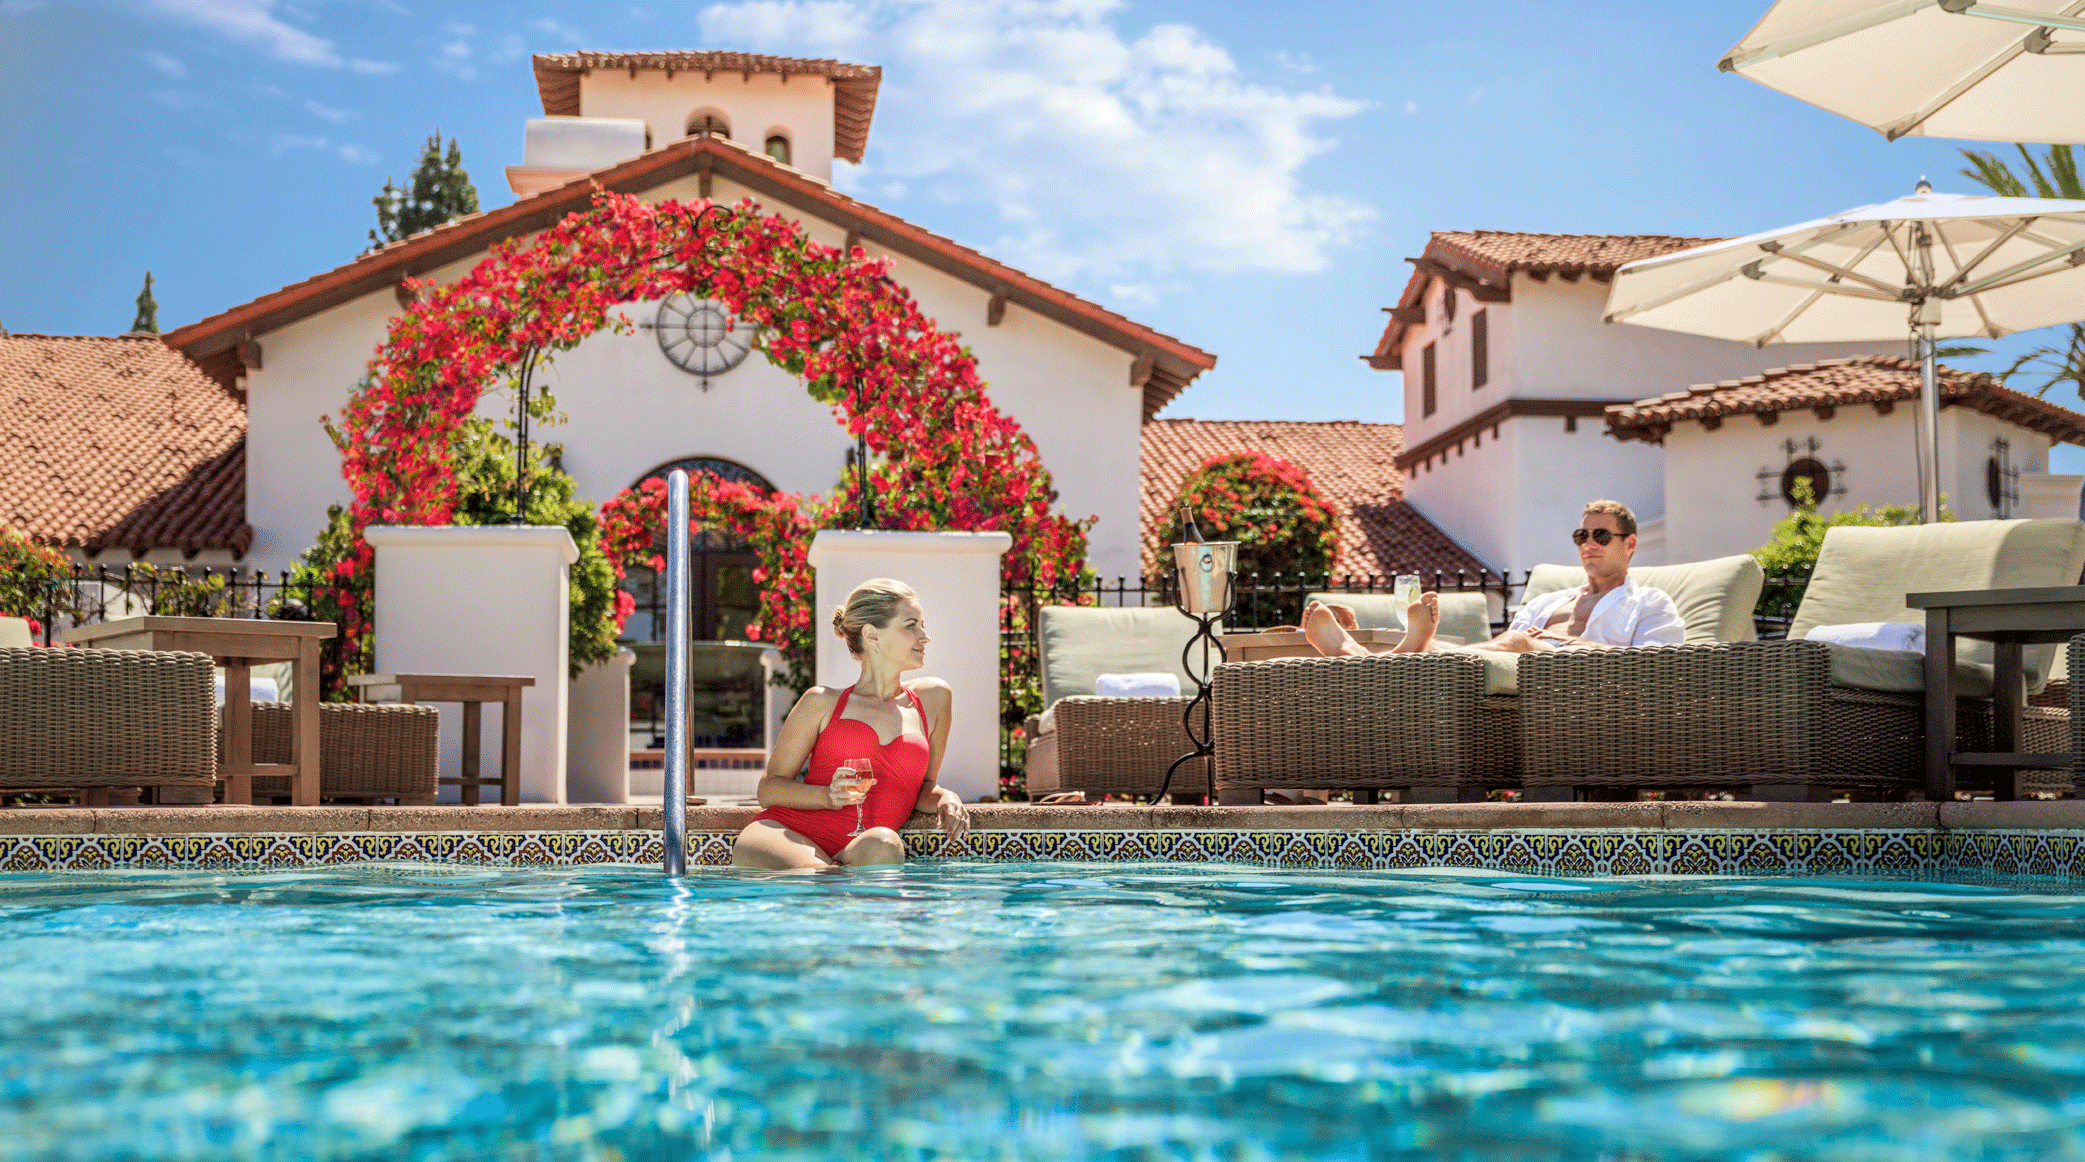 La Costa's pool and spa.